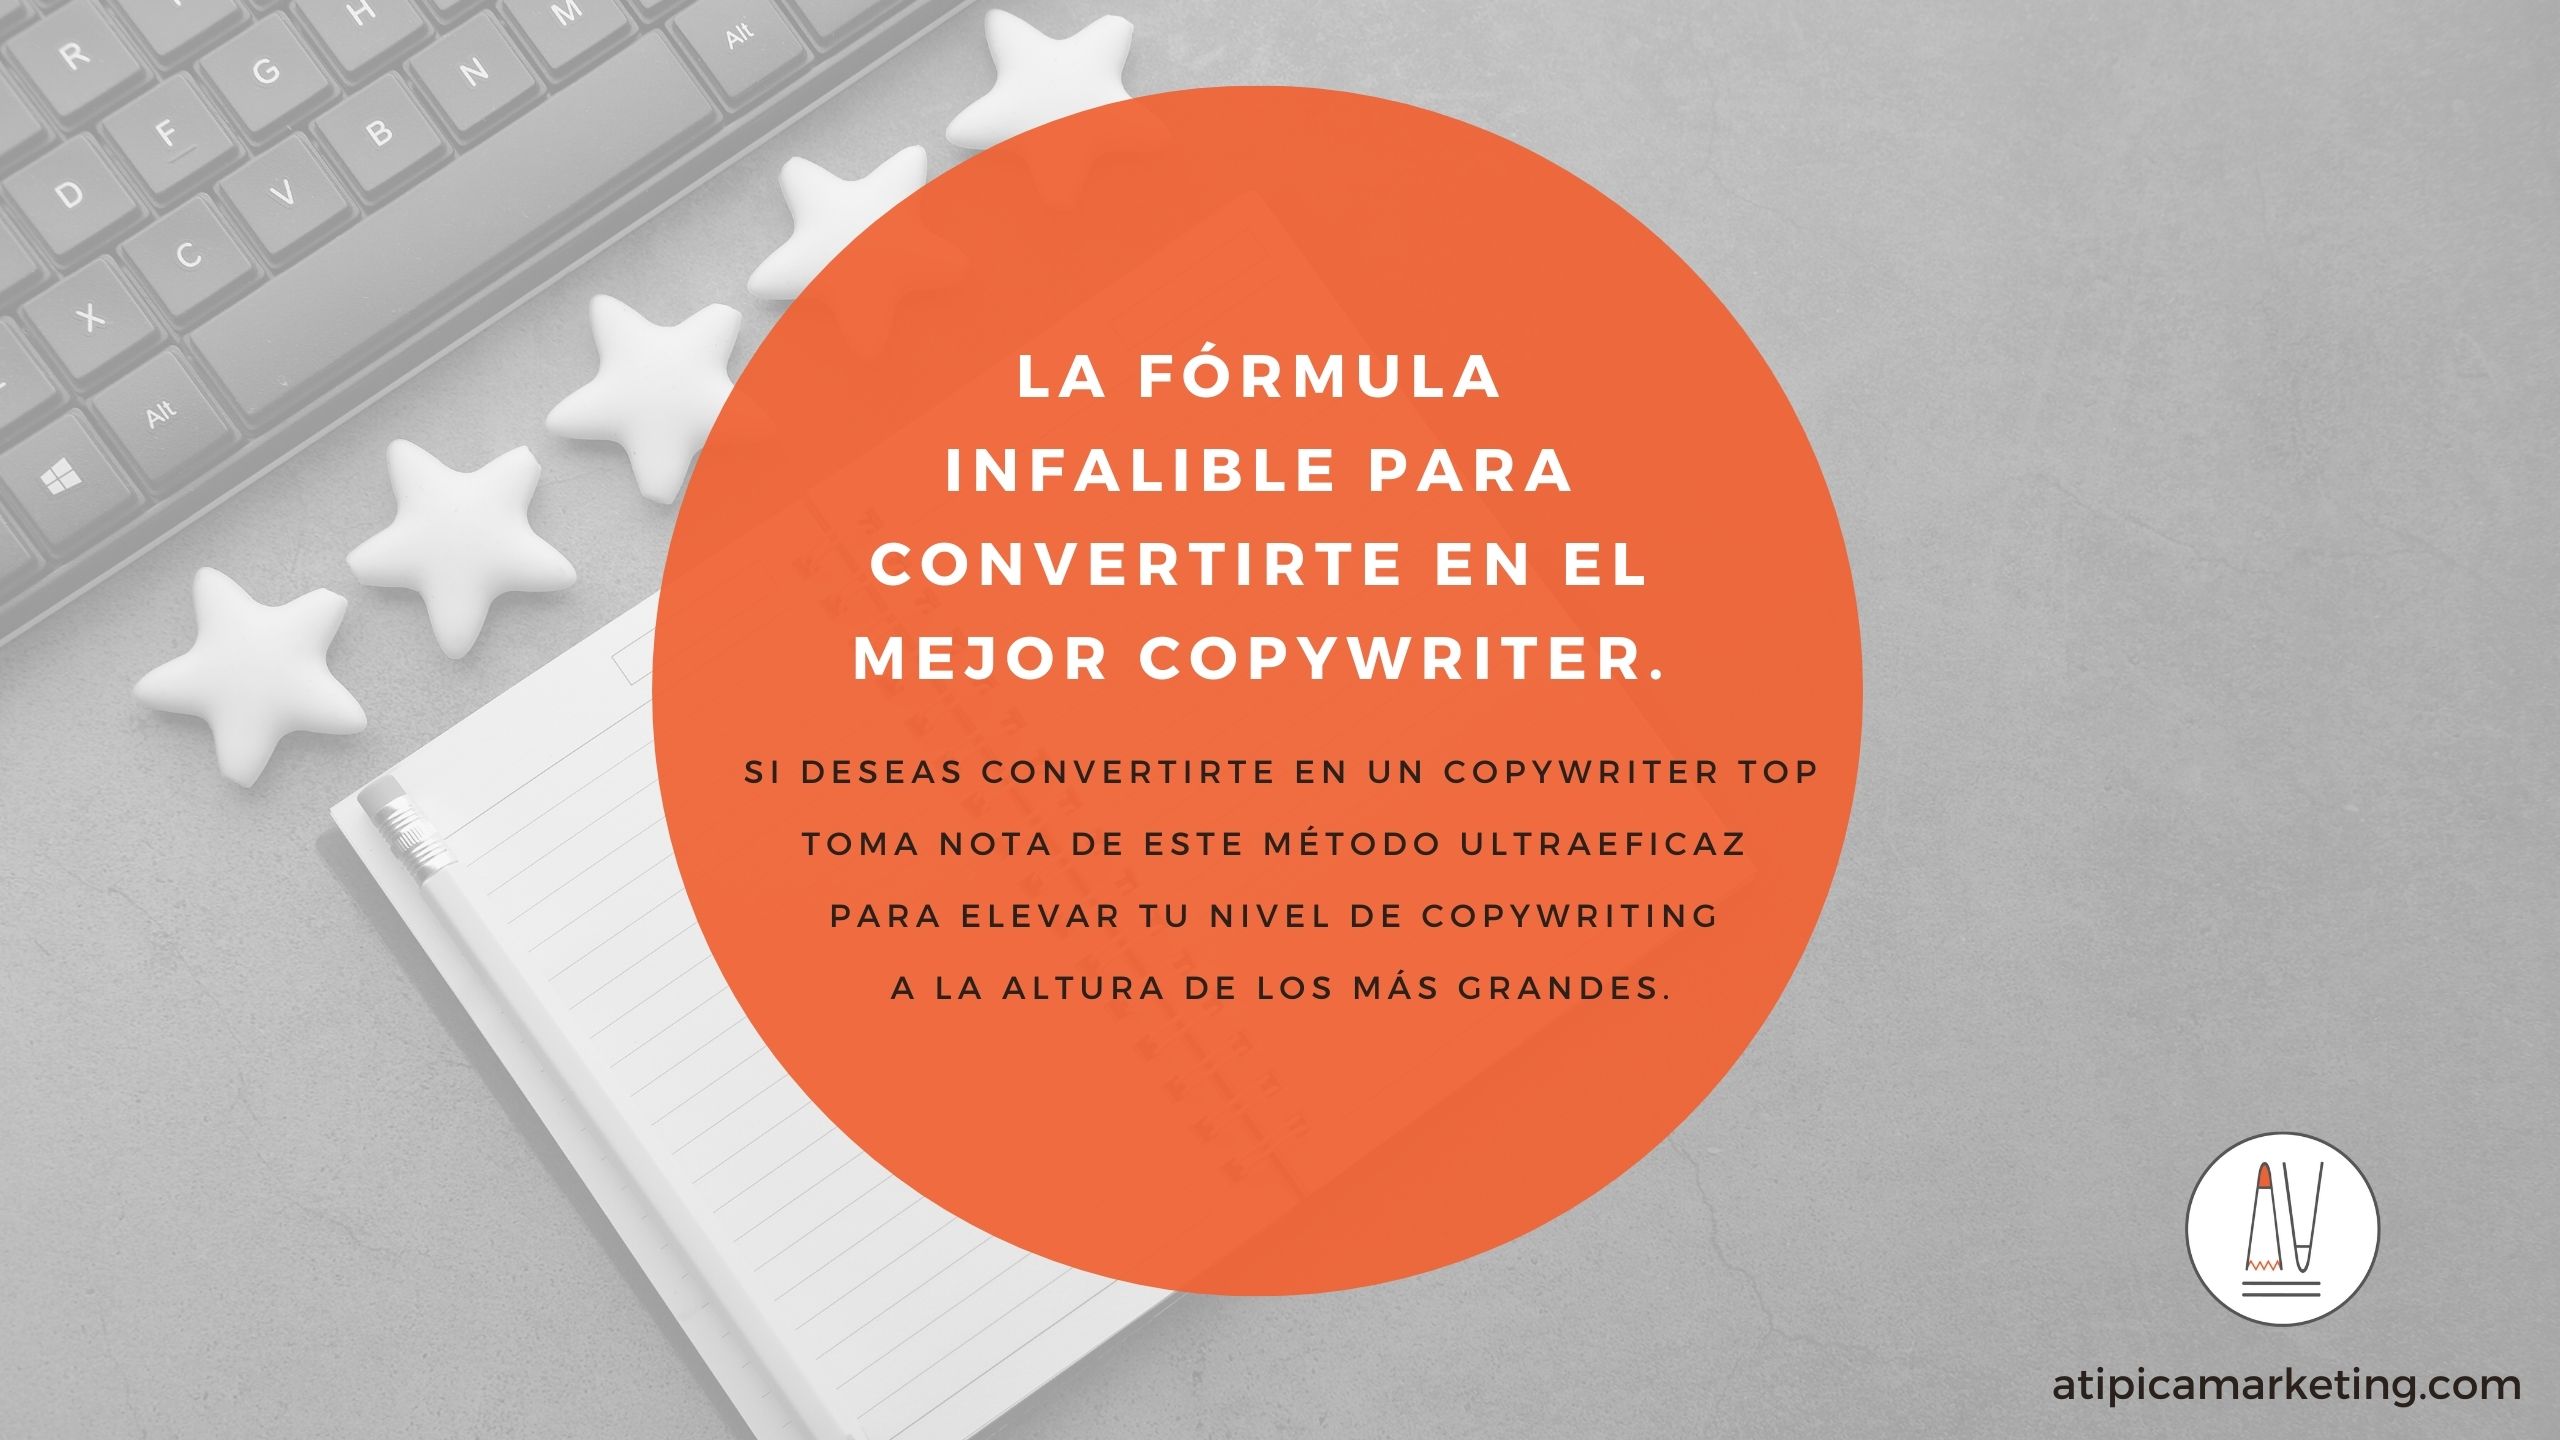 La fórmula infalible para convertirte en el mejor copywriter